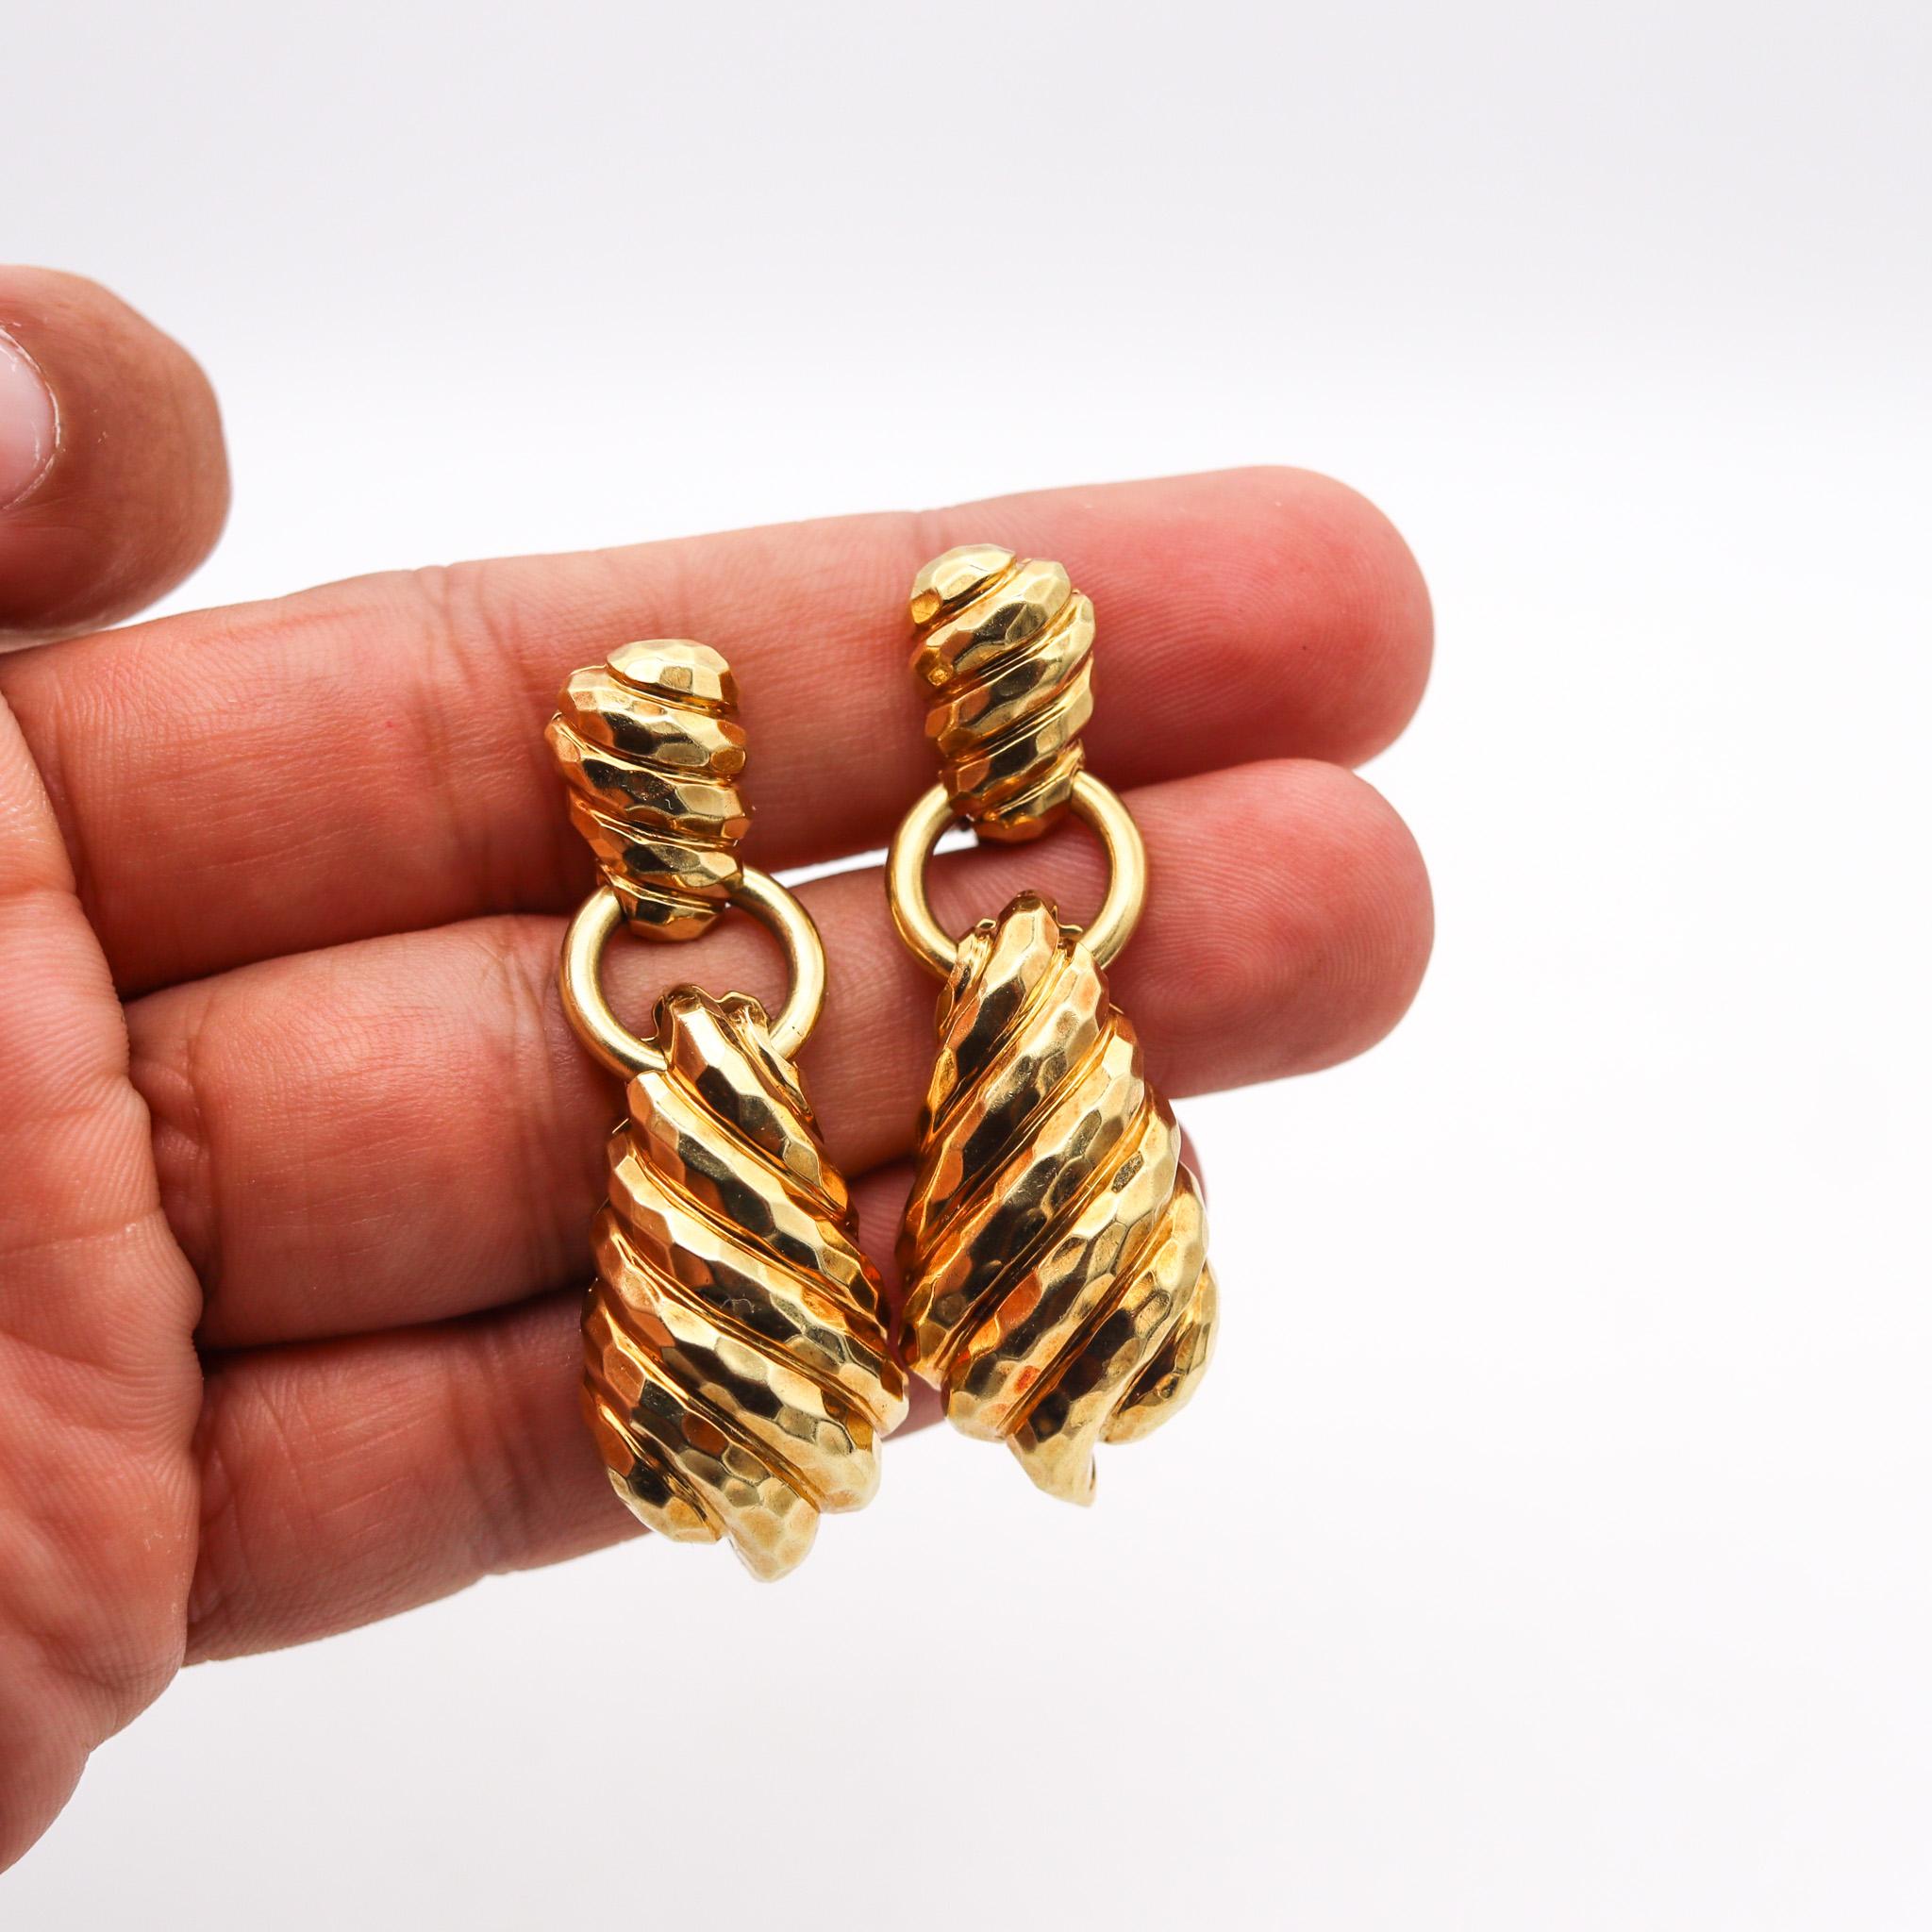 Boucles d'oreilles pendantes conçues par Henry Dunay.

Grande paire de boucles d'oreilles pendantes, créées à New York dans l'atelier de joaillerie de Henry Dunay, dans les années 1990. Elles ont été réalisées en forme de cannelure, en or jaune